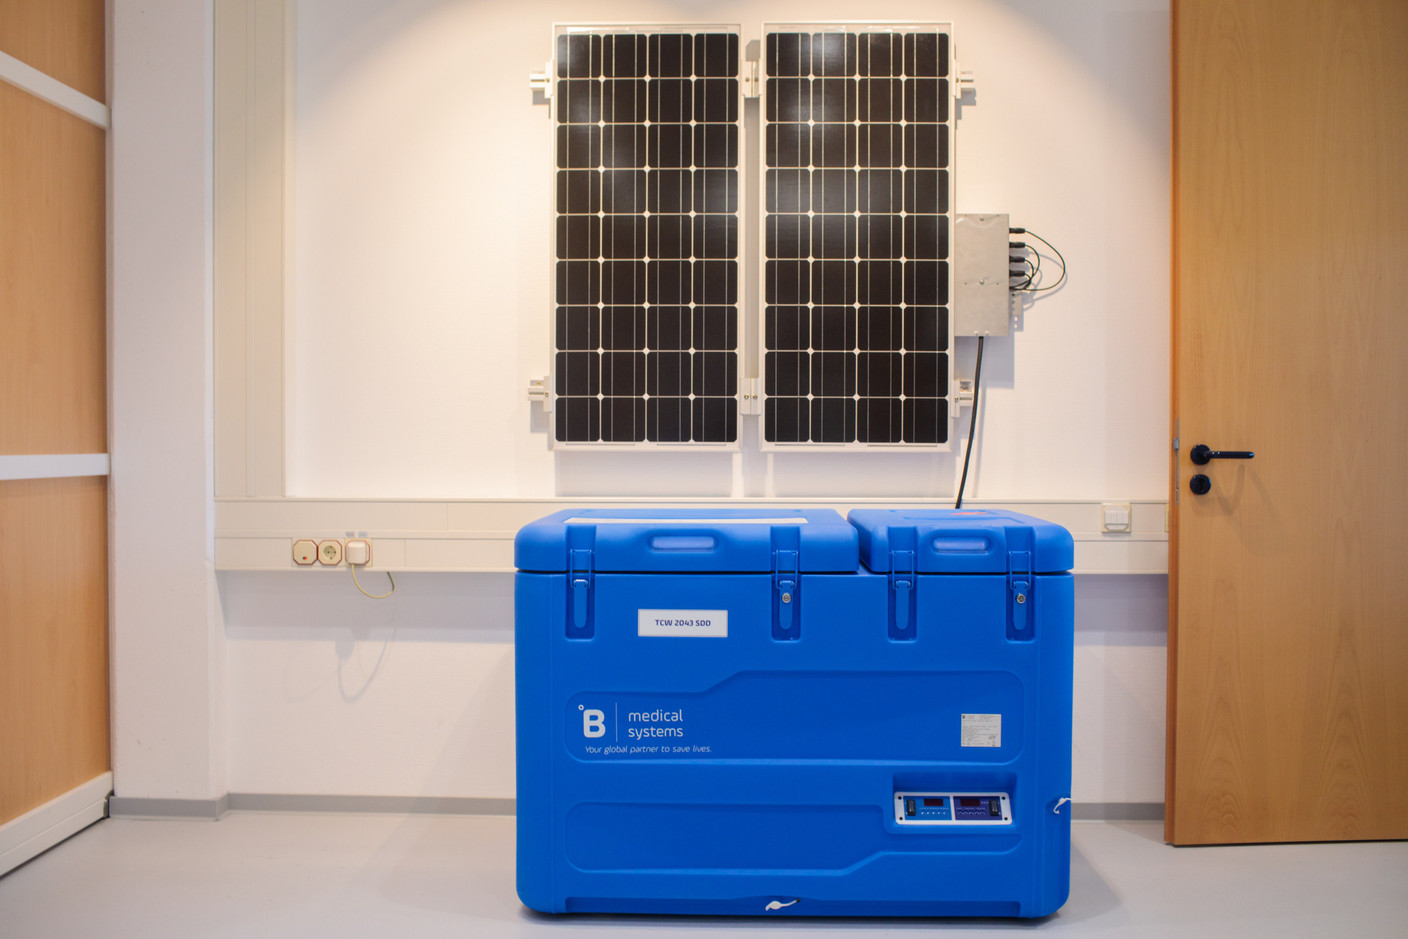 Des réfrigérateurs dotés de panneaux photovoltaïques sont distribués dans les zones les plus reculées du globe.  (Photo: Matic Zorman / Maison Moderne)